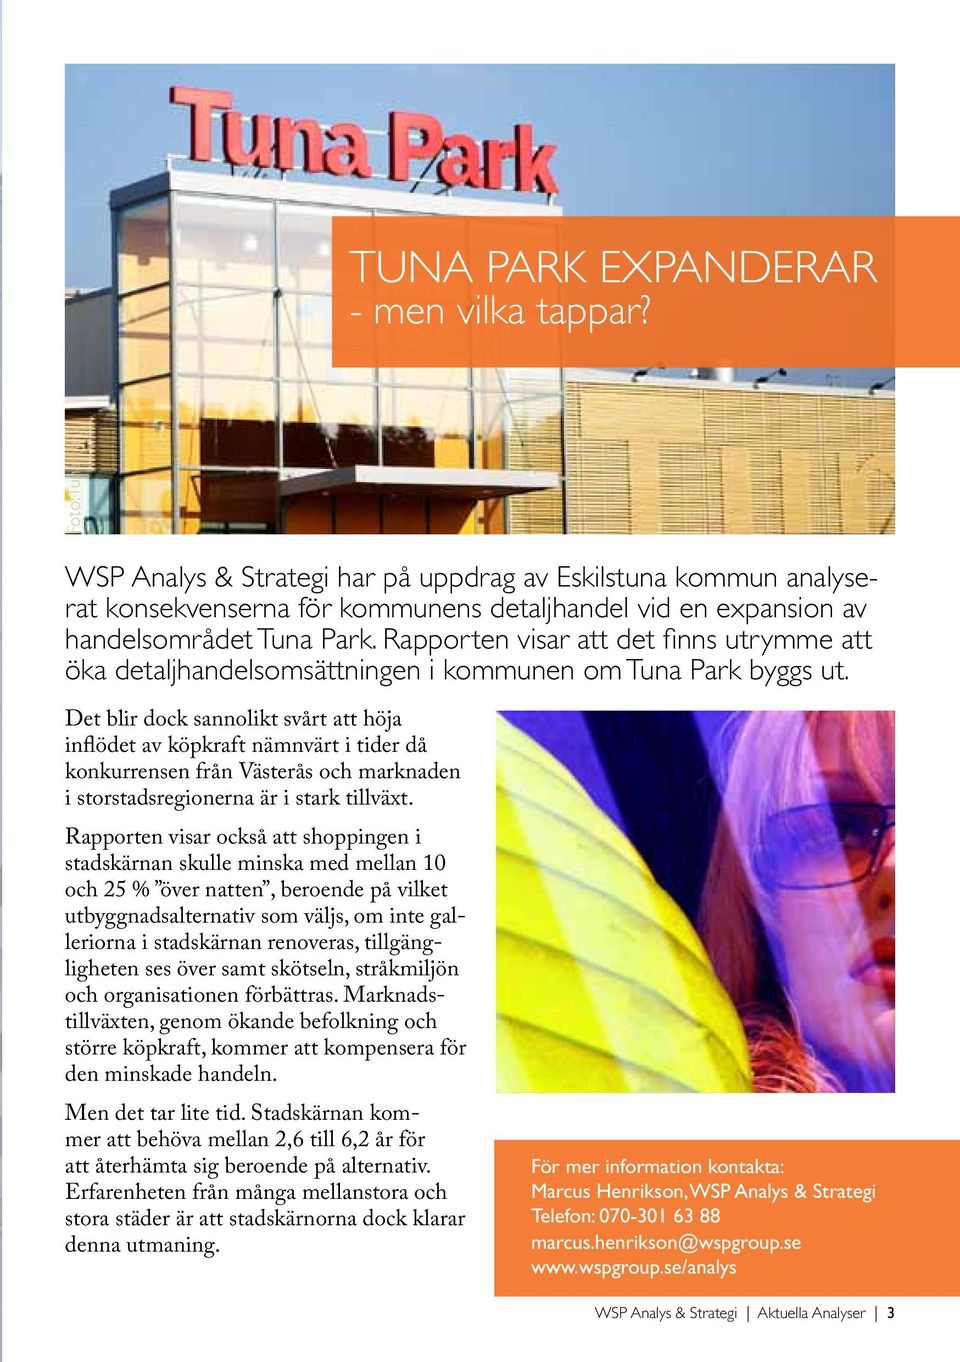 Rapporten visar att det finns utrymme att öka detaljhandelsomsättningen i kommunen om Tuna Park byggs ut.